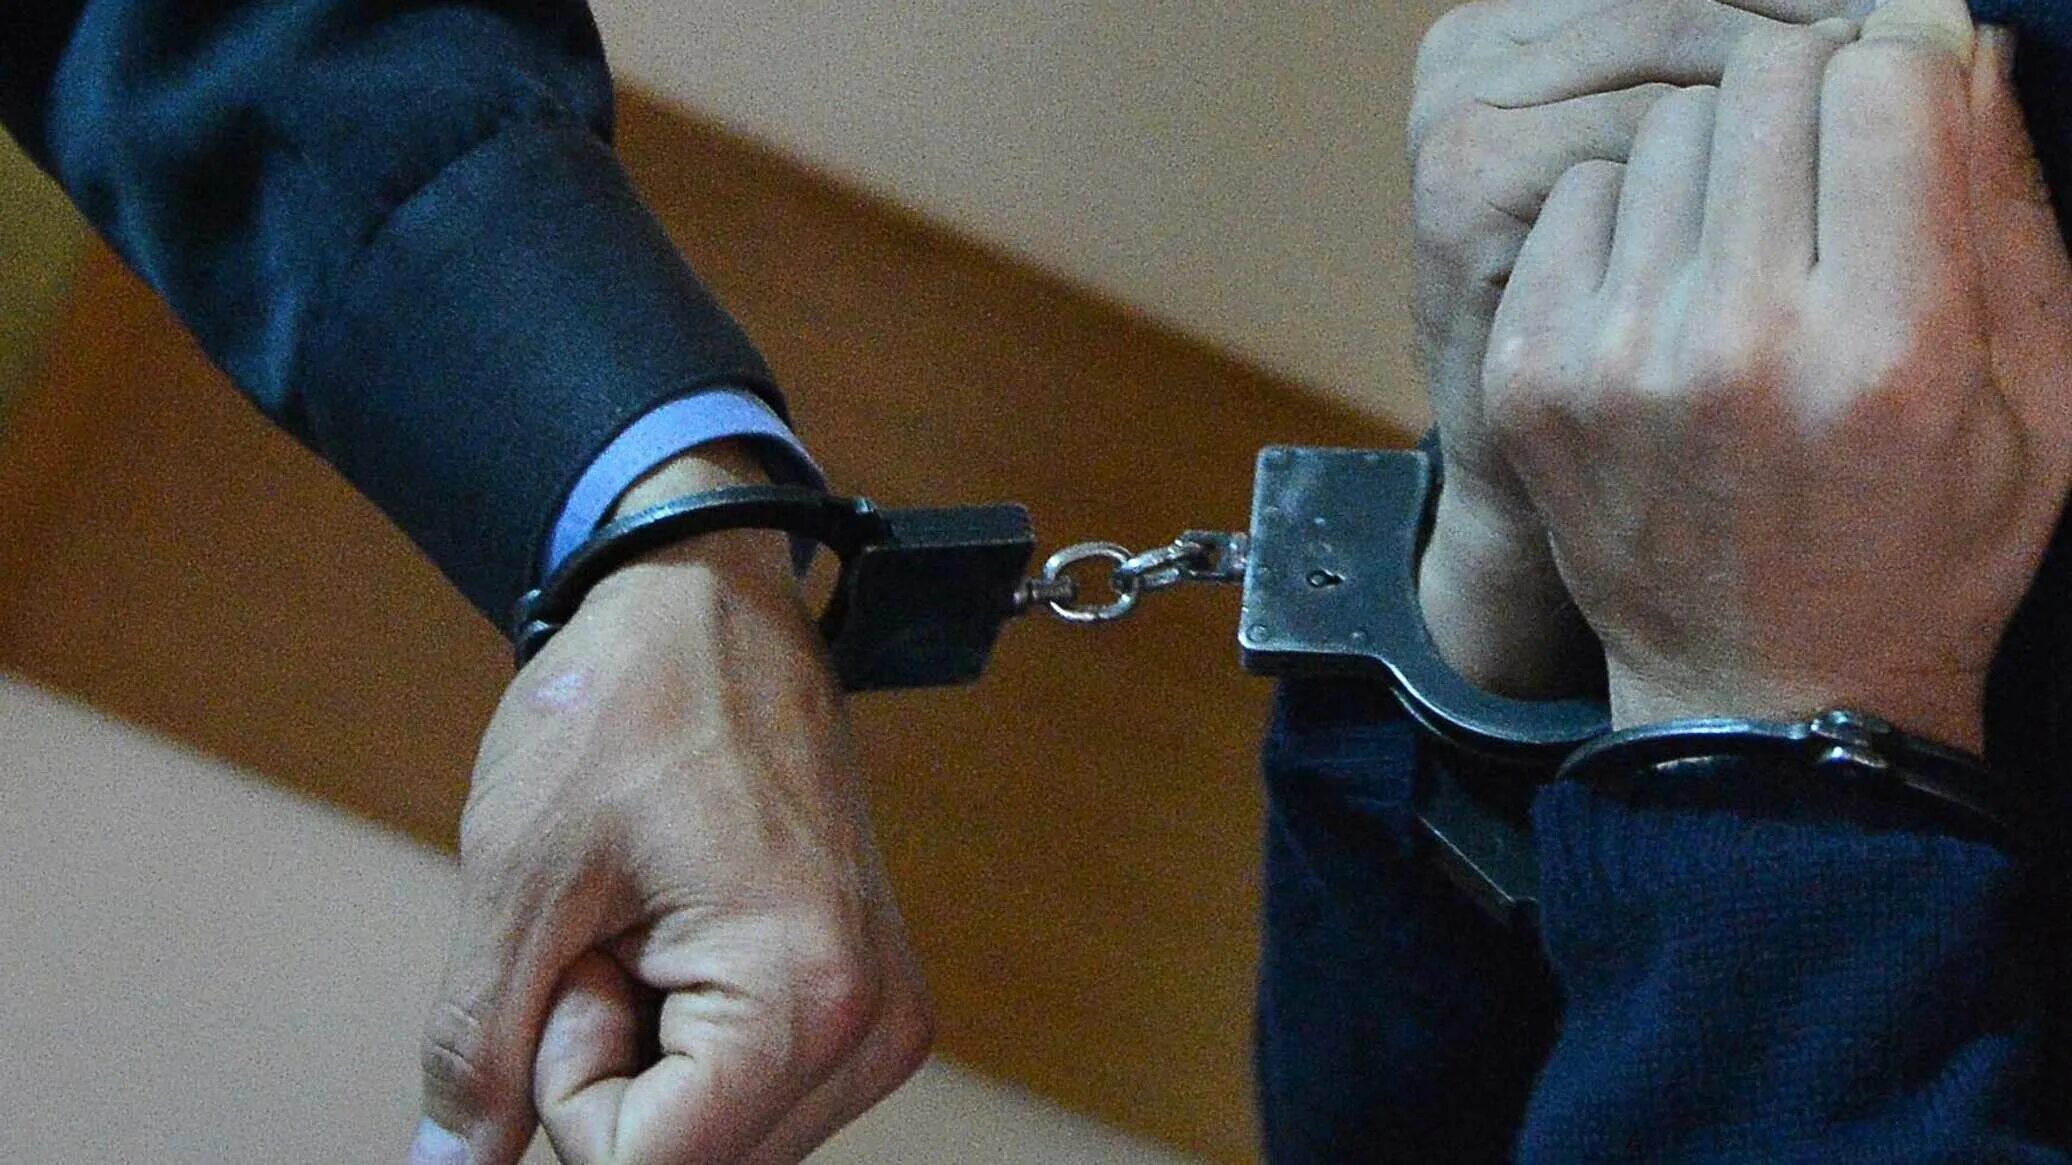 Созанов Сослан прокуратура. Прокурор в наручниках. Взятка.